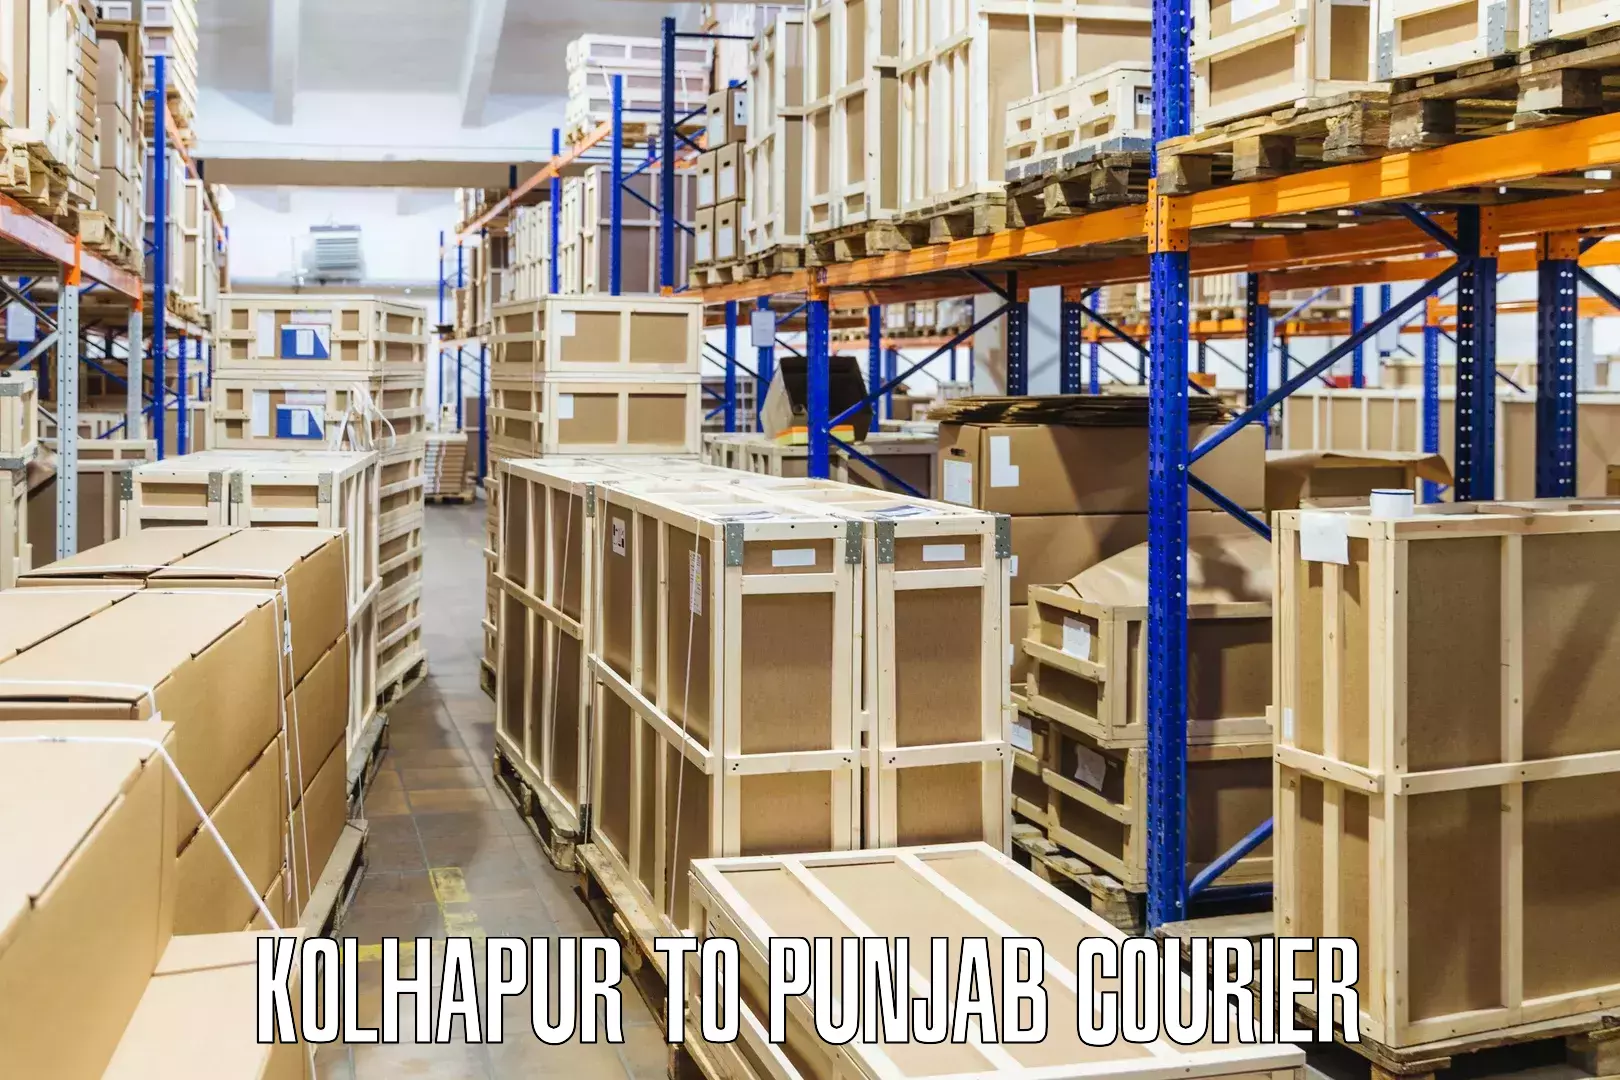 Next-day freight services Kolhapur to Nabha